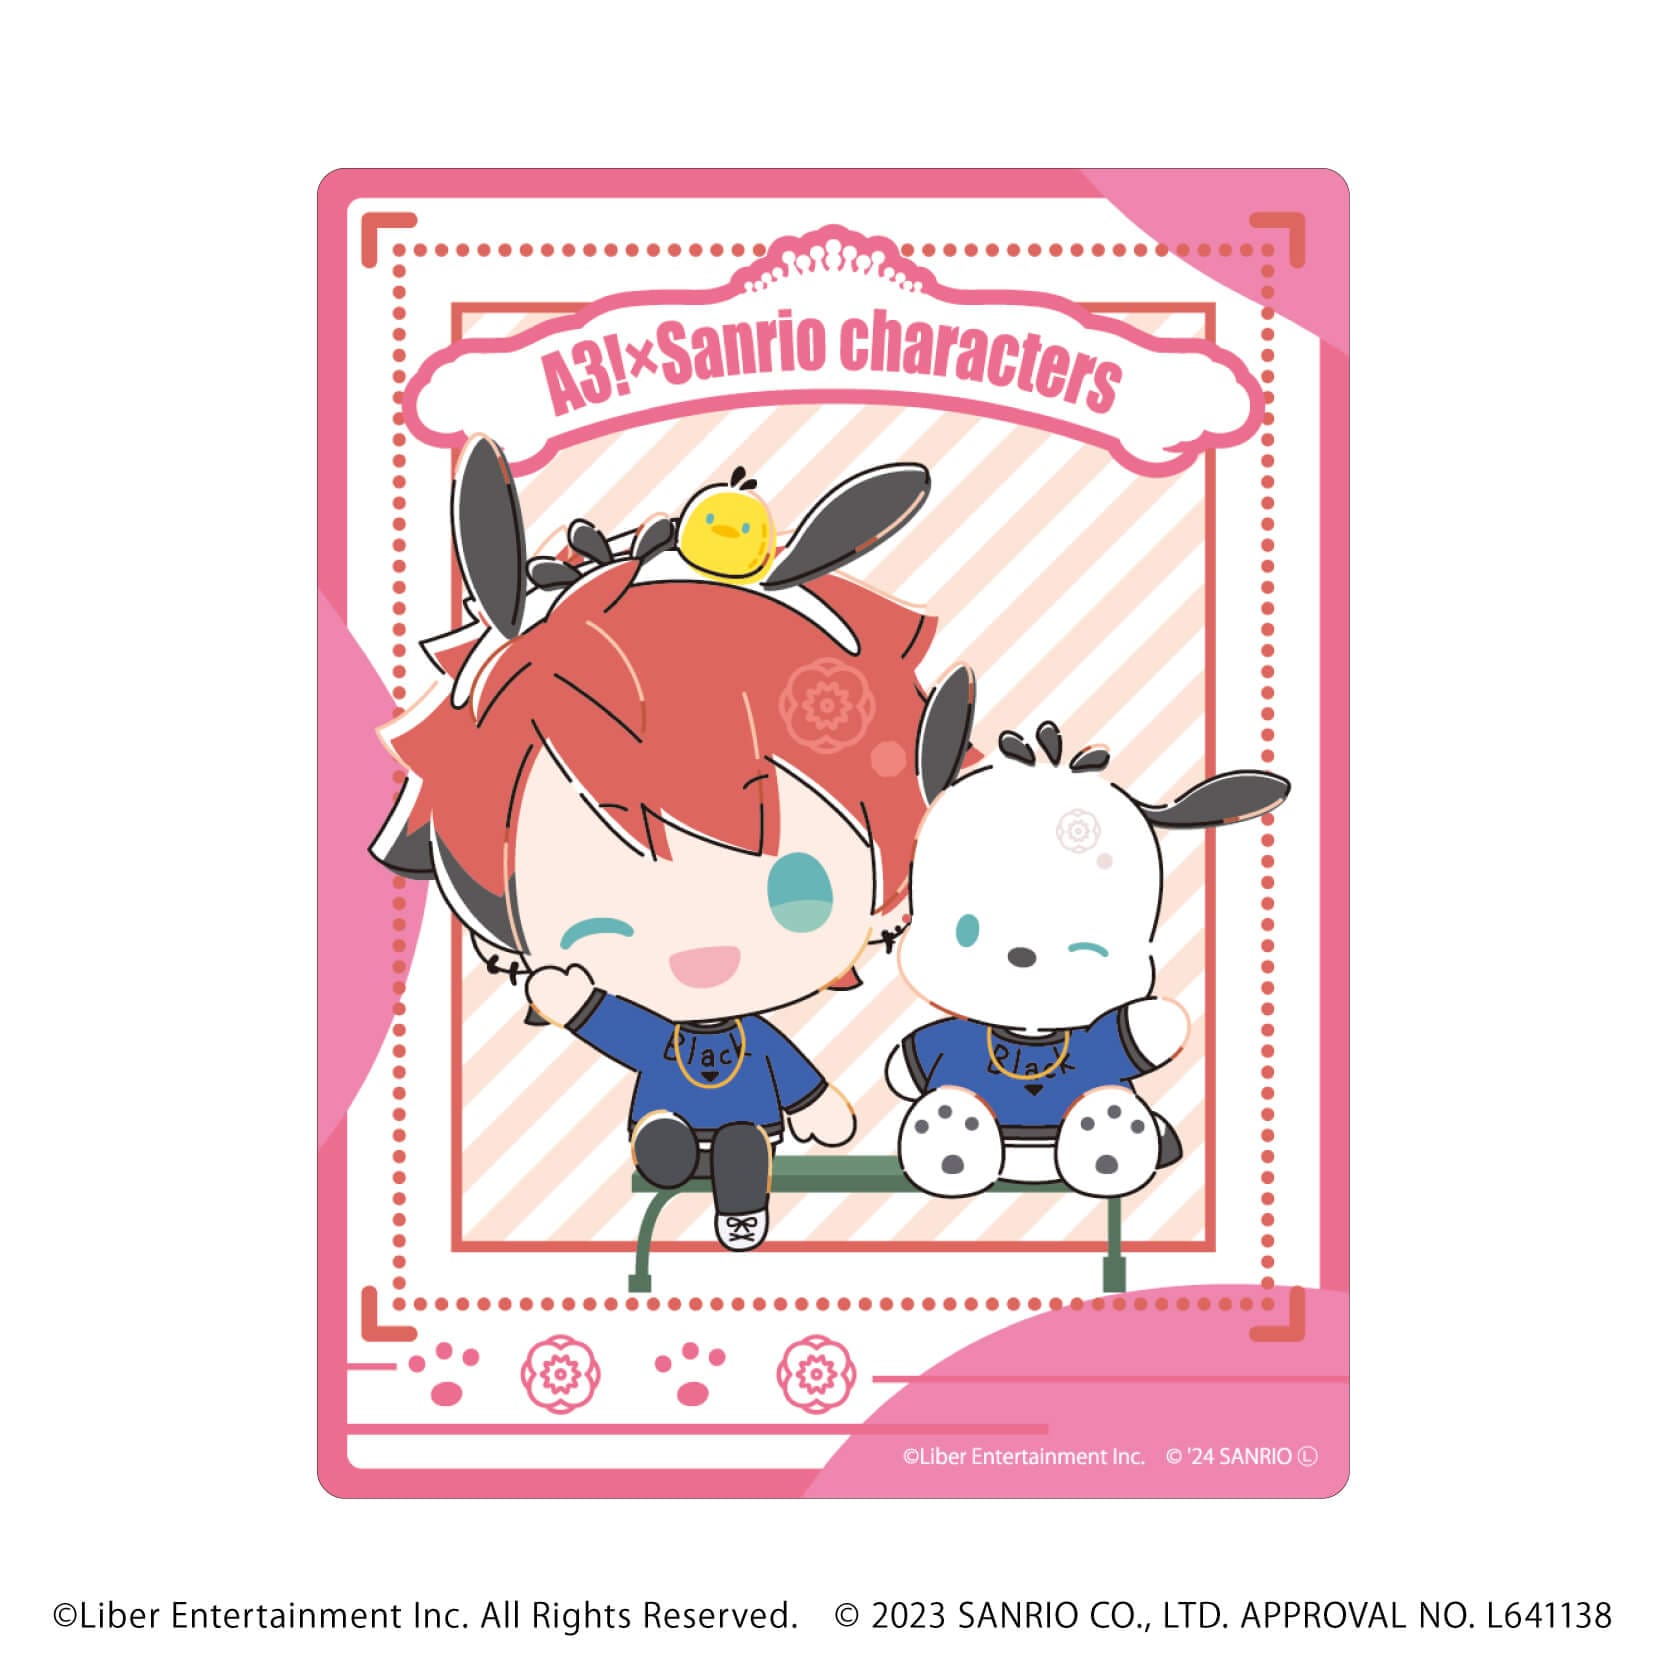 アクリルカード「A3!×Sanrio characters」10/A＆W ブラインド(12種)(ミニキャライラスト)